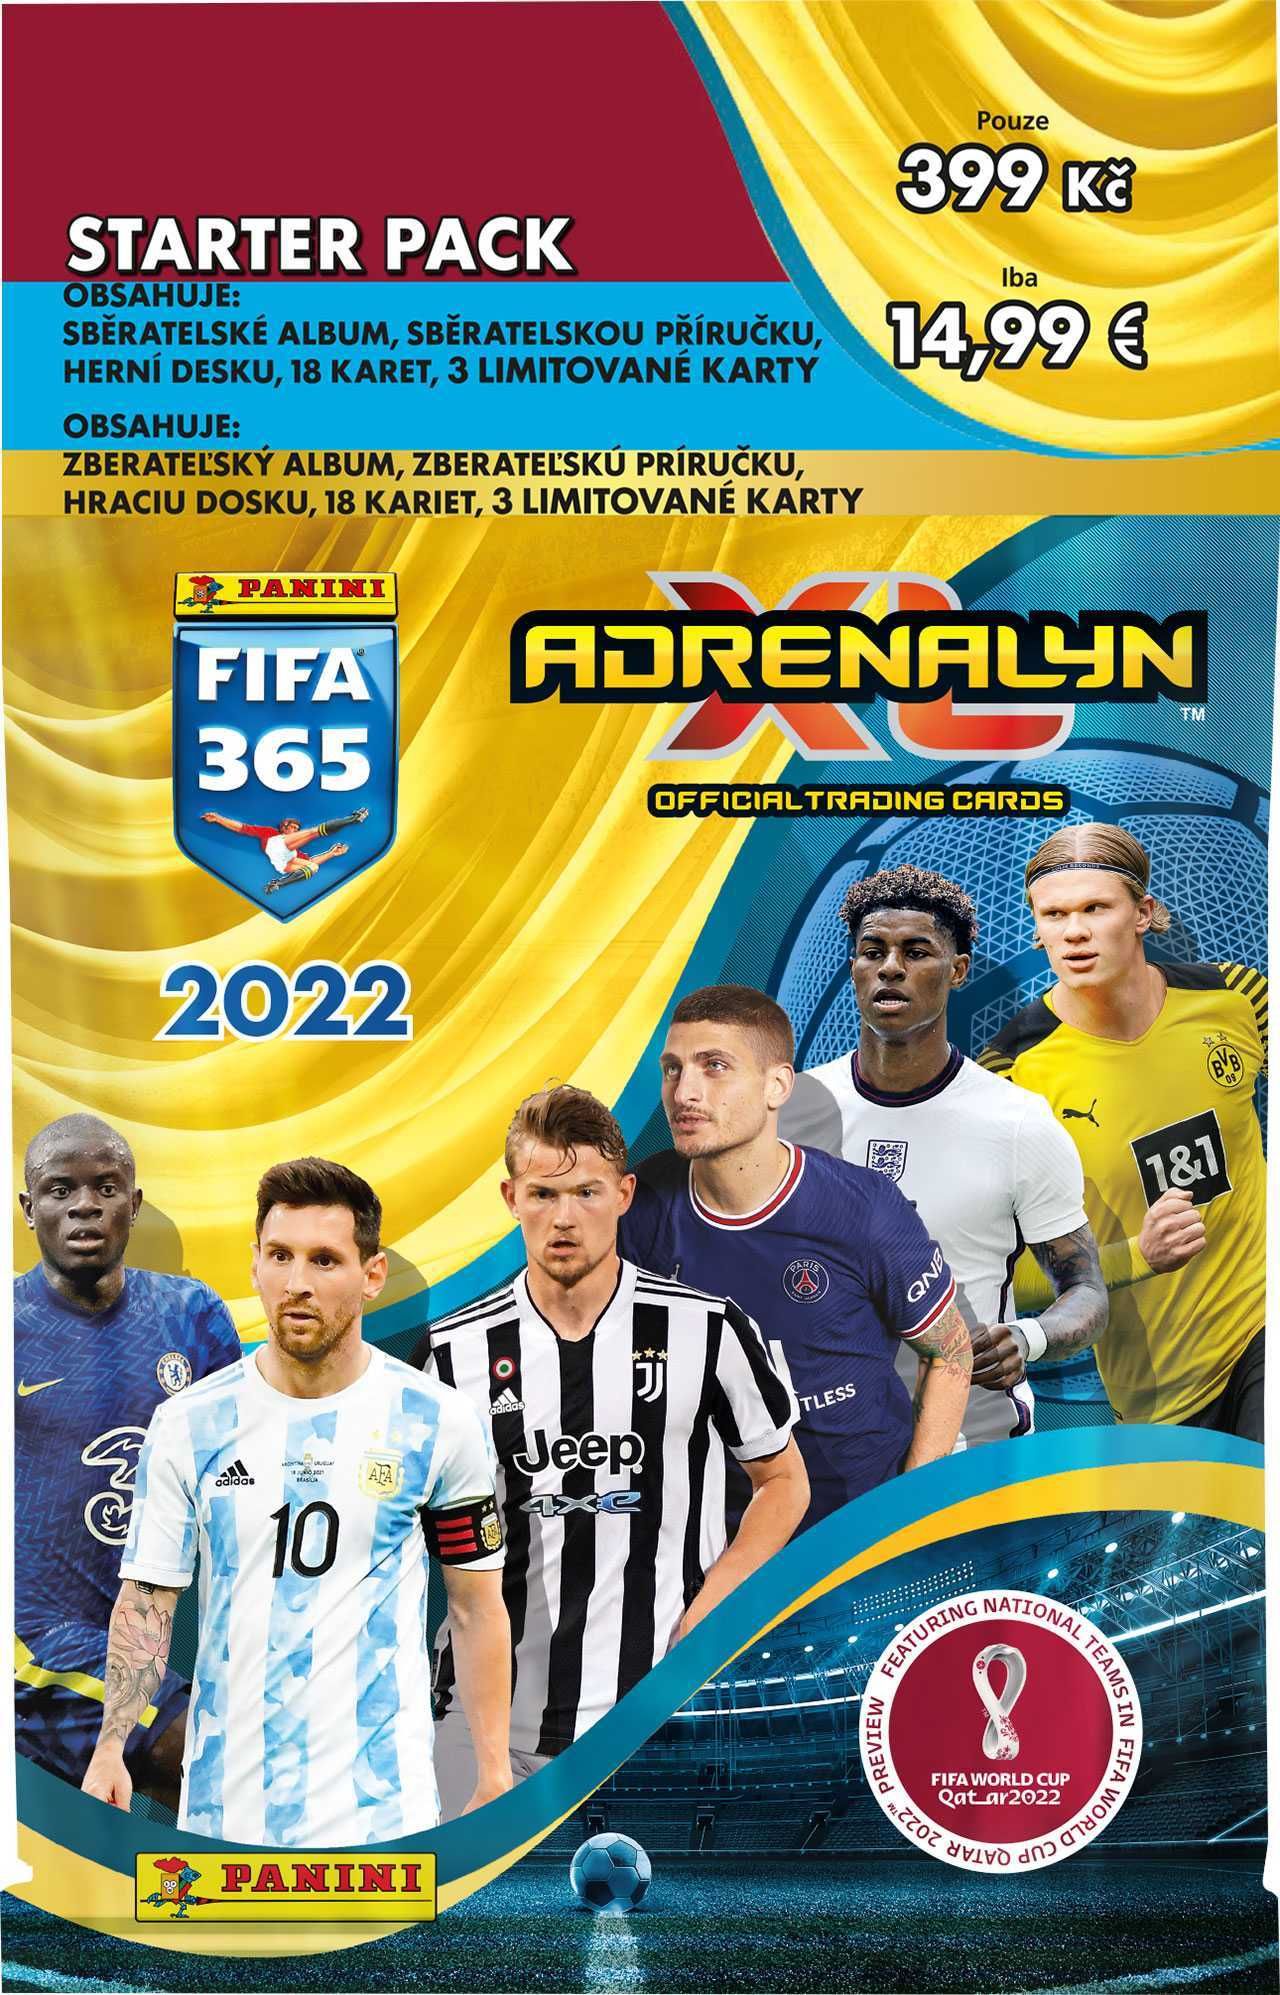 PANINI FIFA 365 2021/2022 - ADRENALYN - starter set - obrázek 1